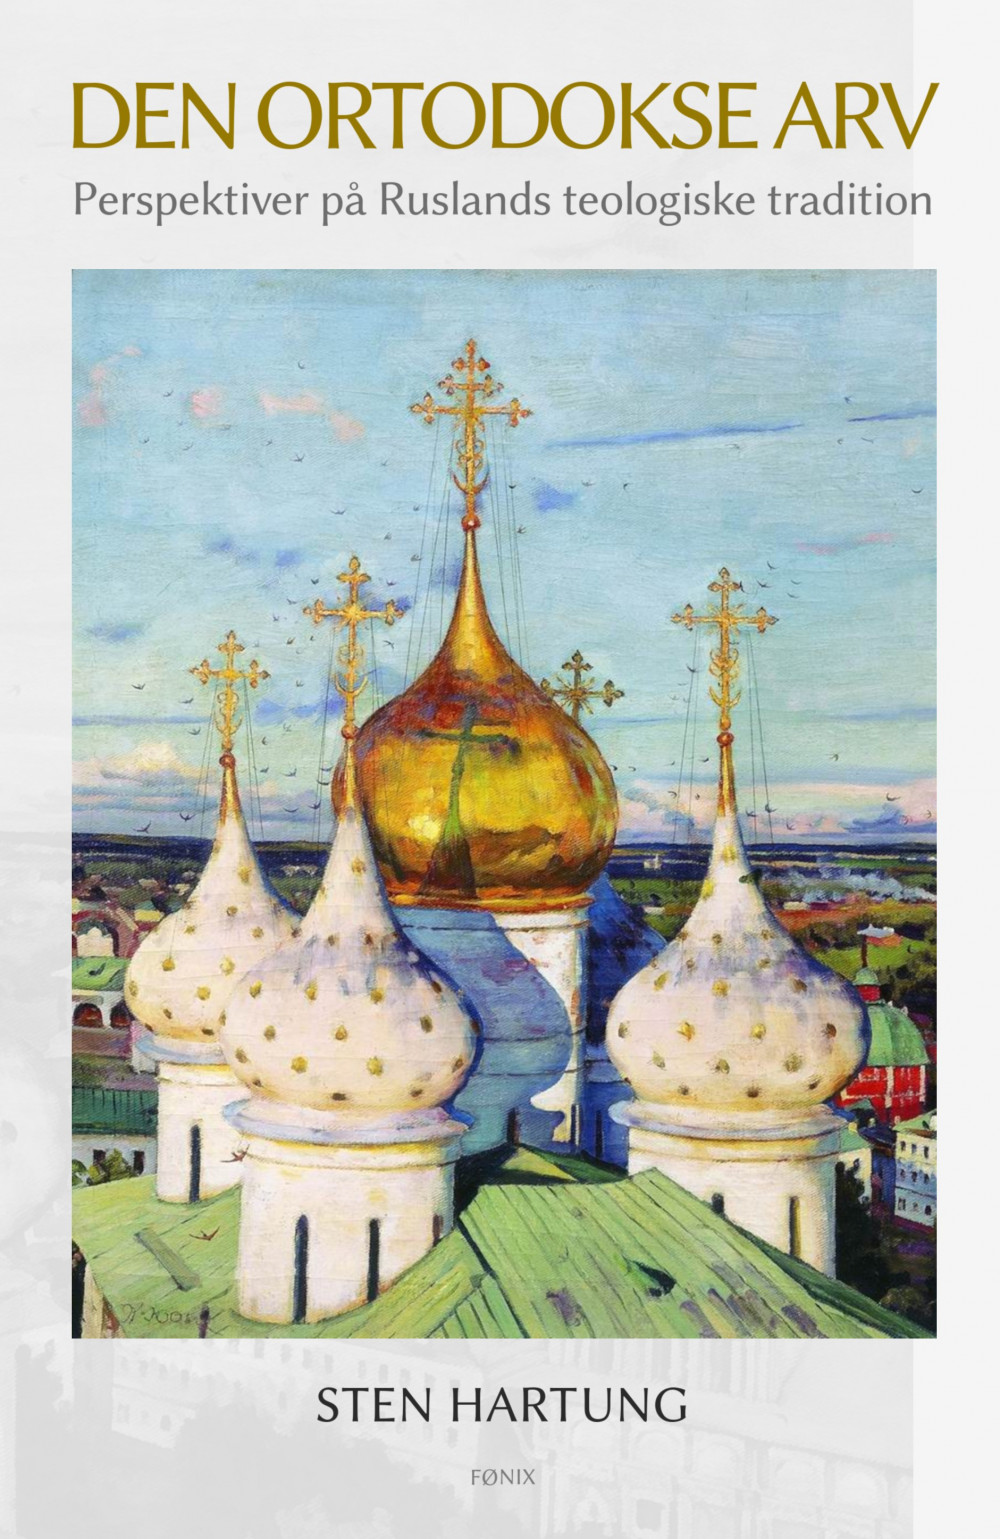 Den ortodokse arv - perspektiver på Ruslands teologiske tradition